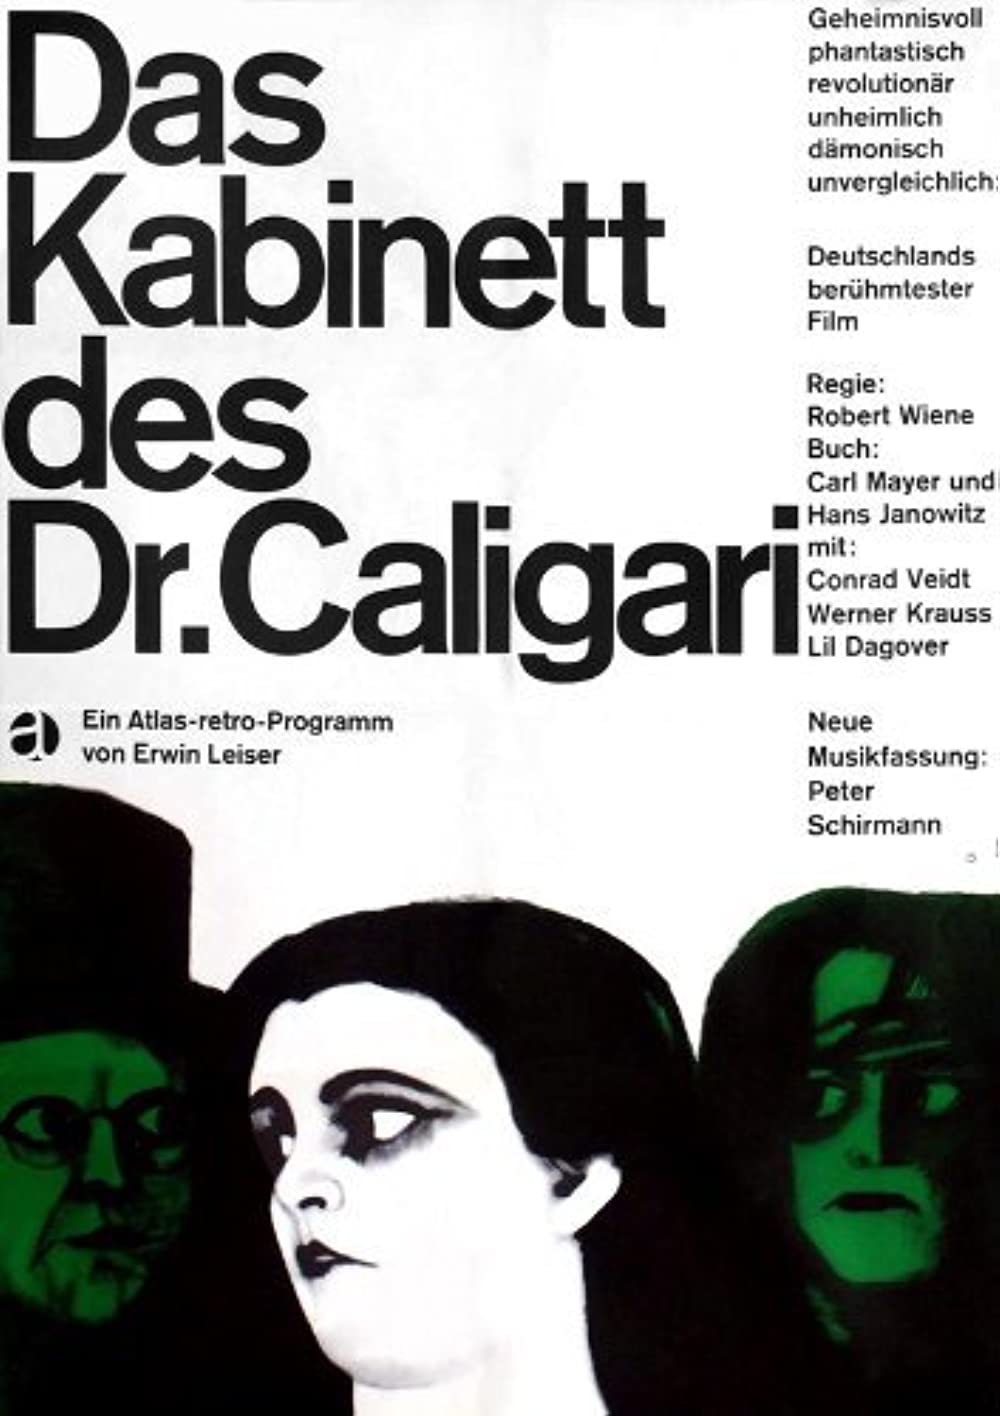 Filmbeschreibung zu Das Cabinet des Dr. Caligari